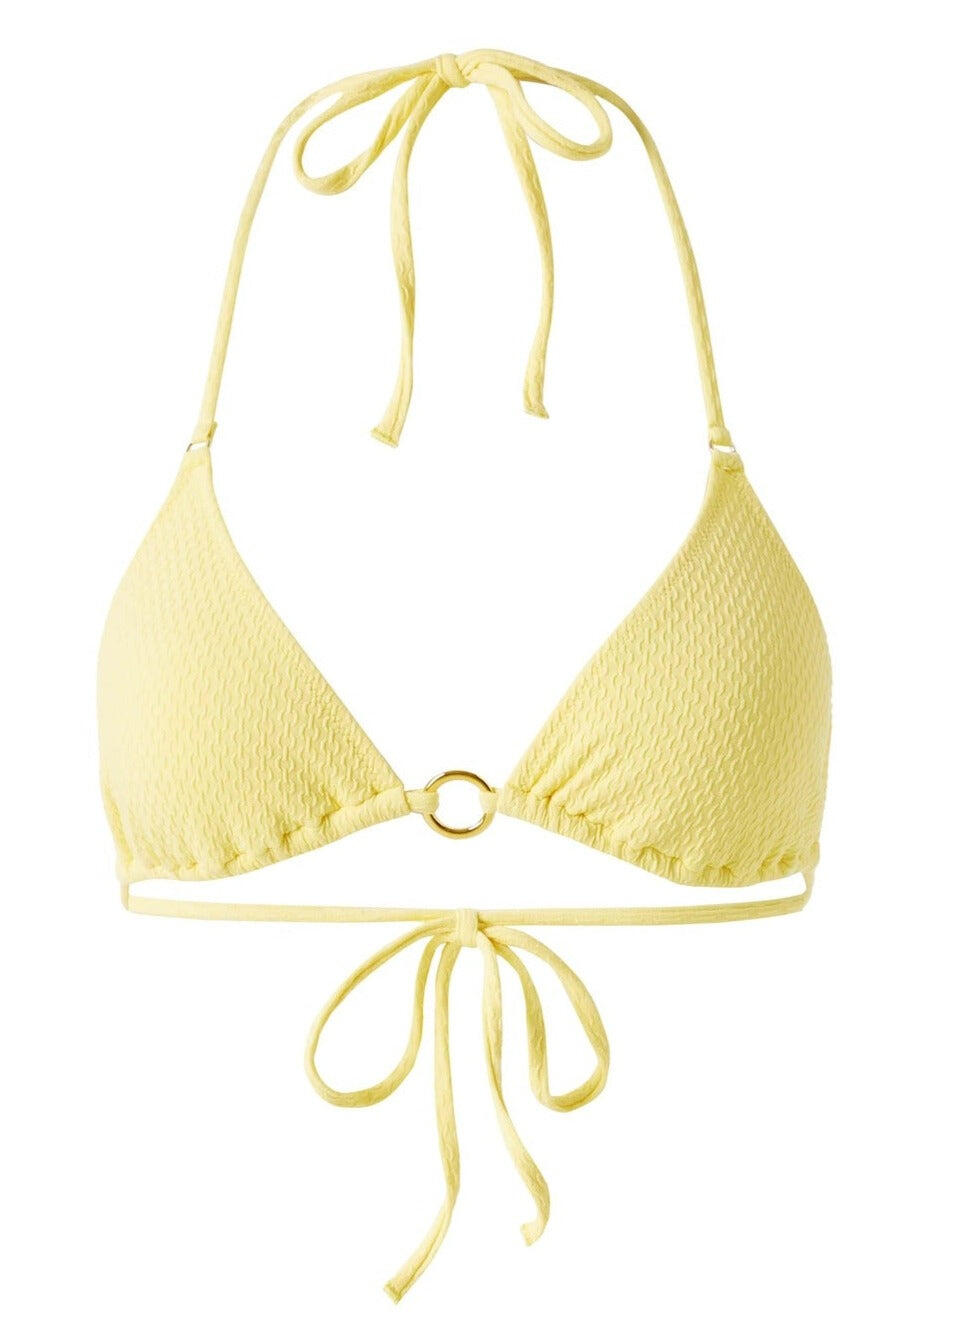 Designer Triangle Bikini Top in Yellow | Yellow Bikini Top for Women